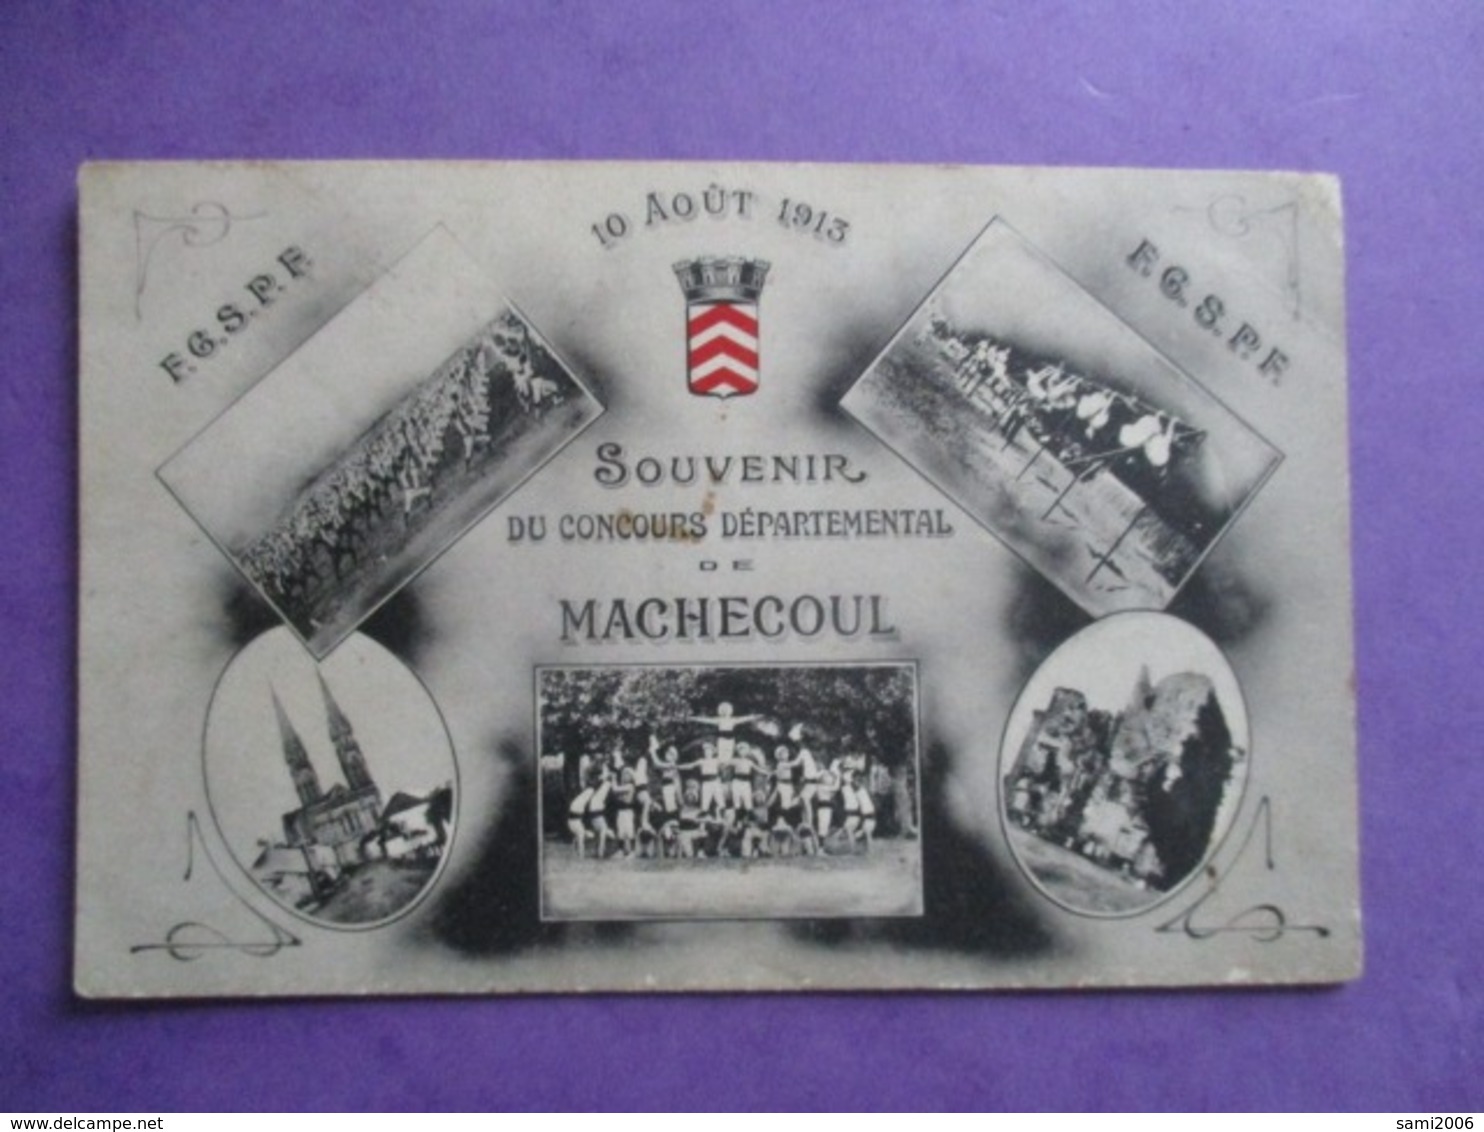 CPA 44 MACHECOUL SOUVENIR DU CONCOURS DEPARTEMENTAL 10 AOUT 1913 MULTI VUES - Machecoul